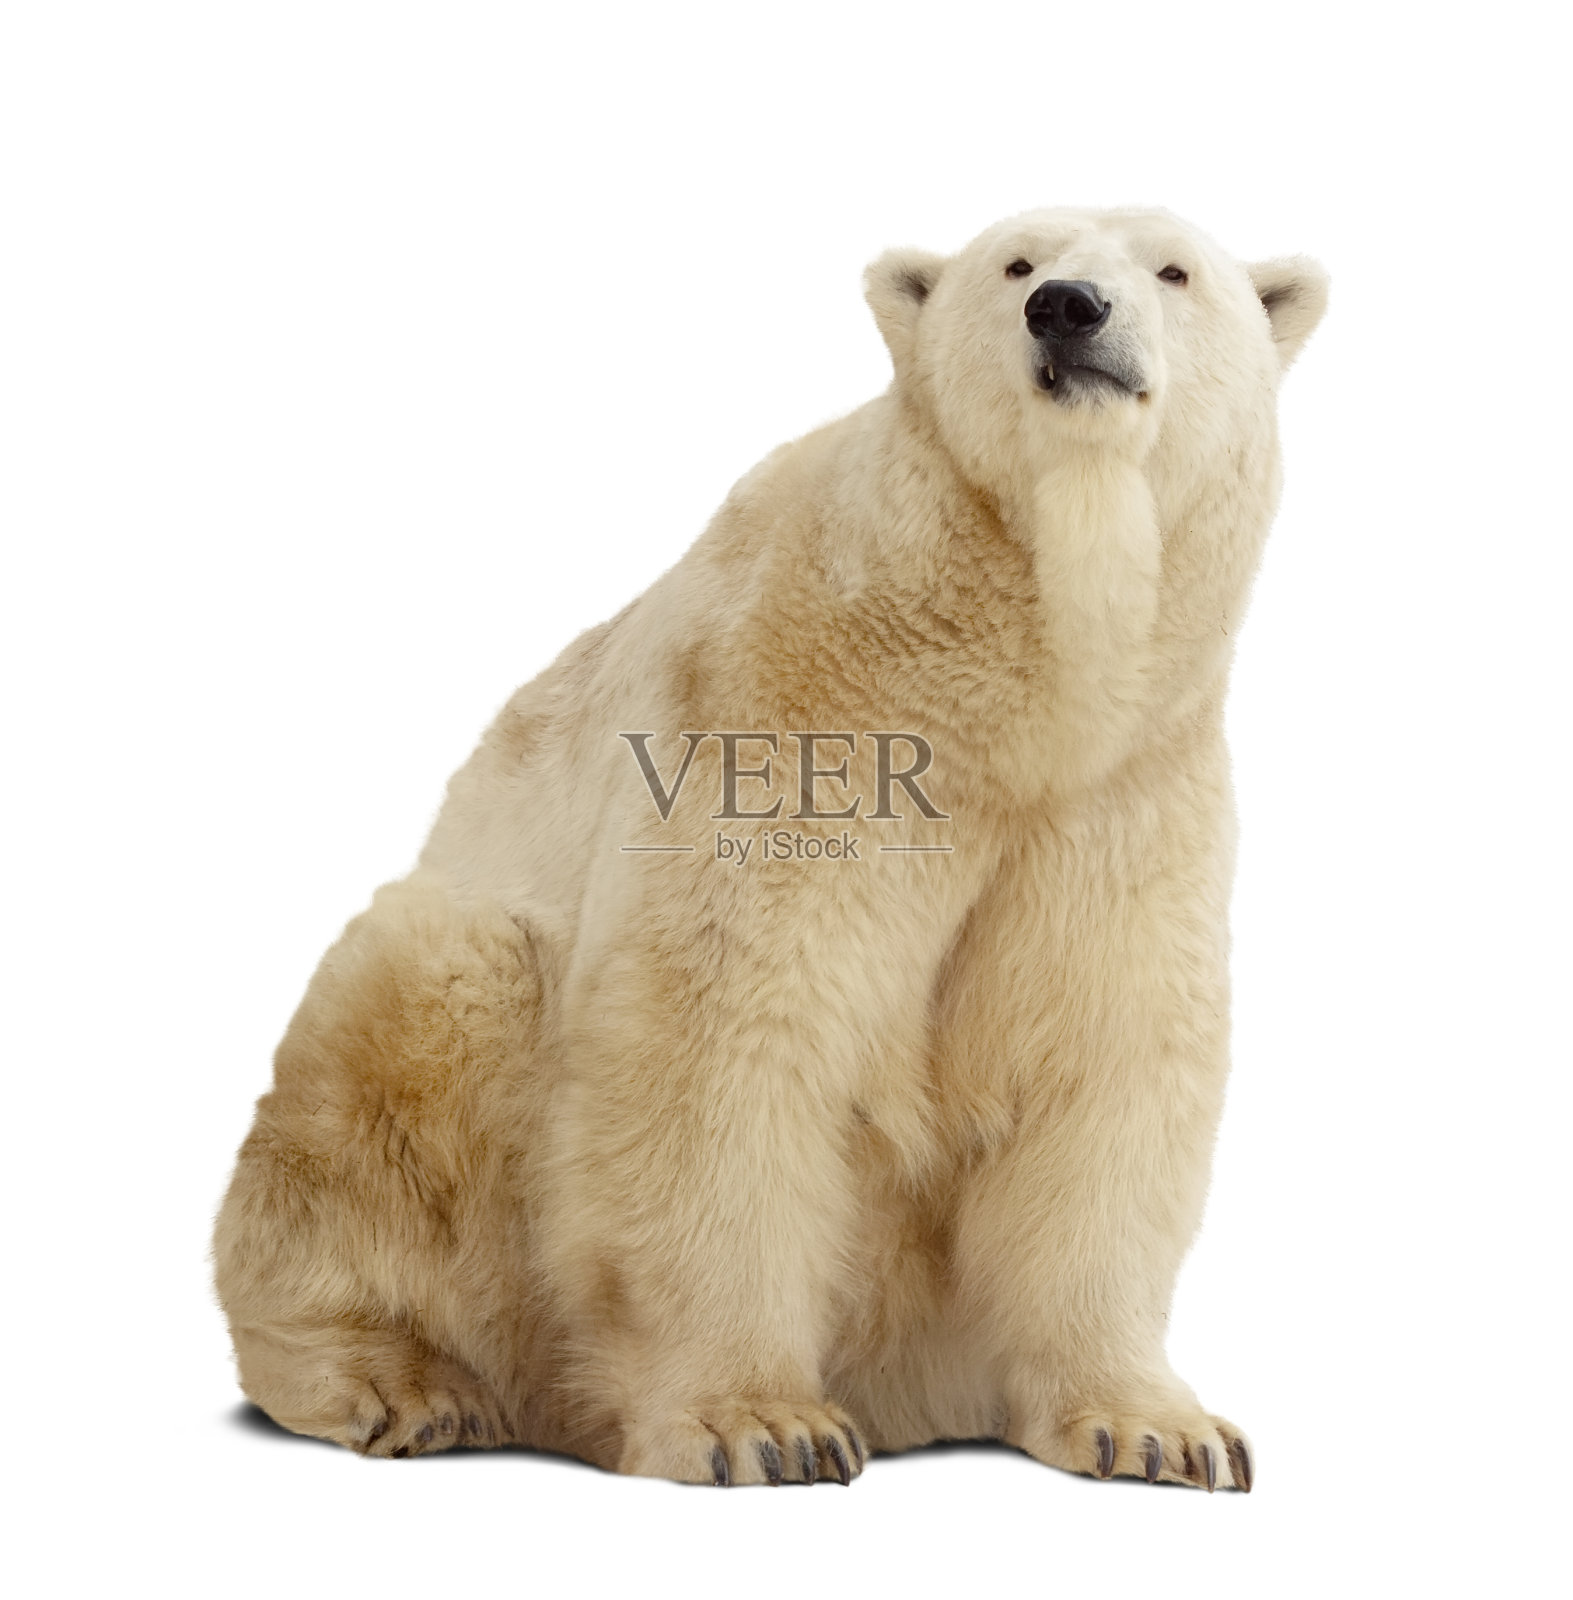 一只孤立的北极熊站在白色的背景上照片摄影图片